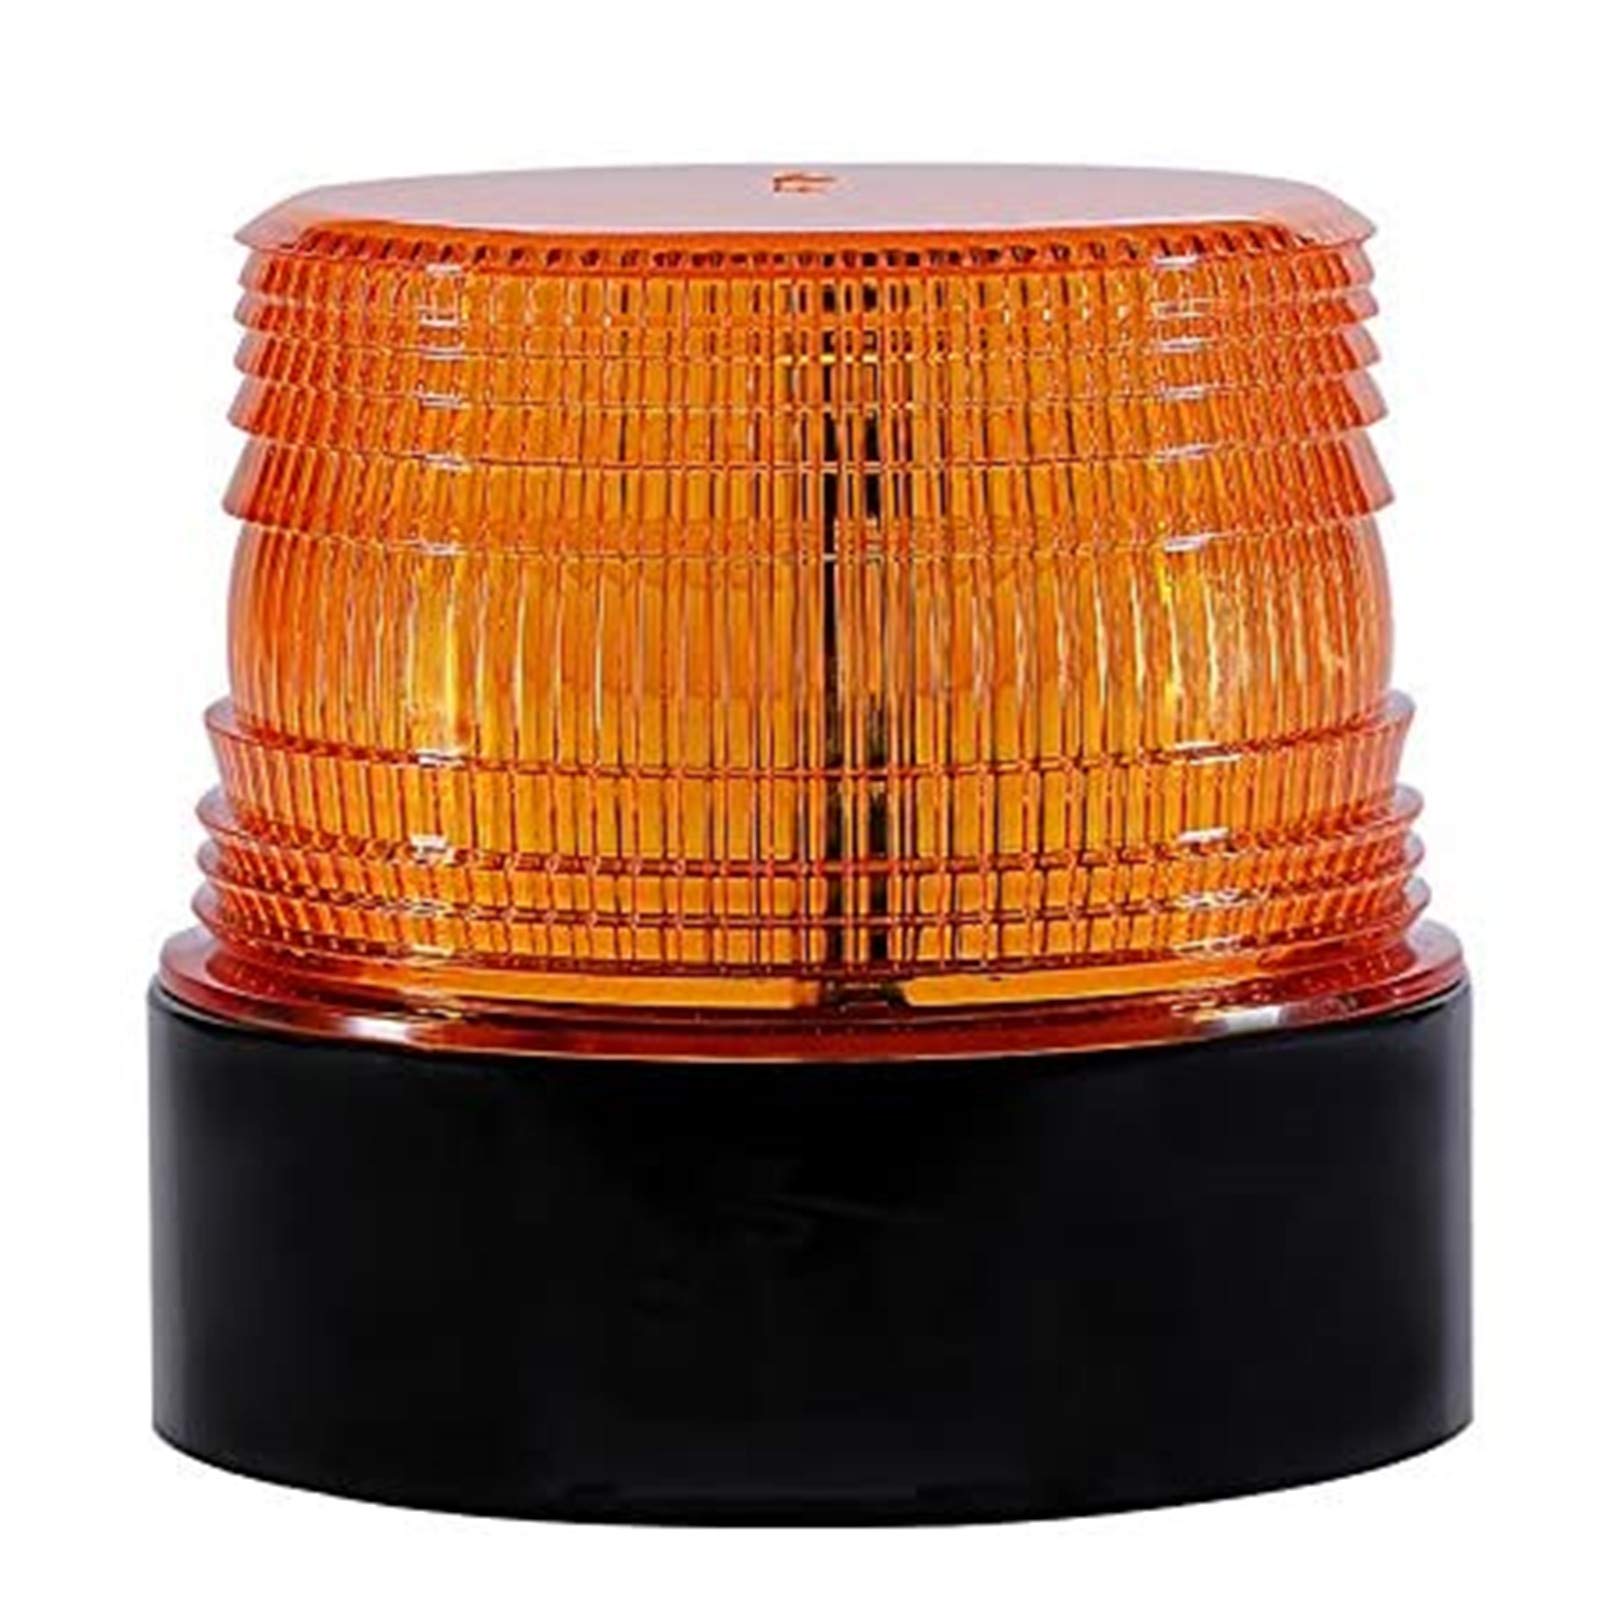 pas cher Dinfu Gyrophare LED orange 12V sans fil lumière stroboscopique feux clignotant magnetique d´urgence signalement lumières pour auto véhicule | Rechargeable lKW761G0O en ligne